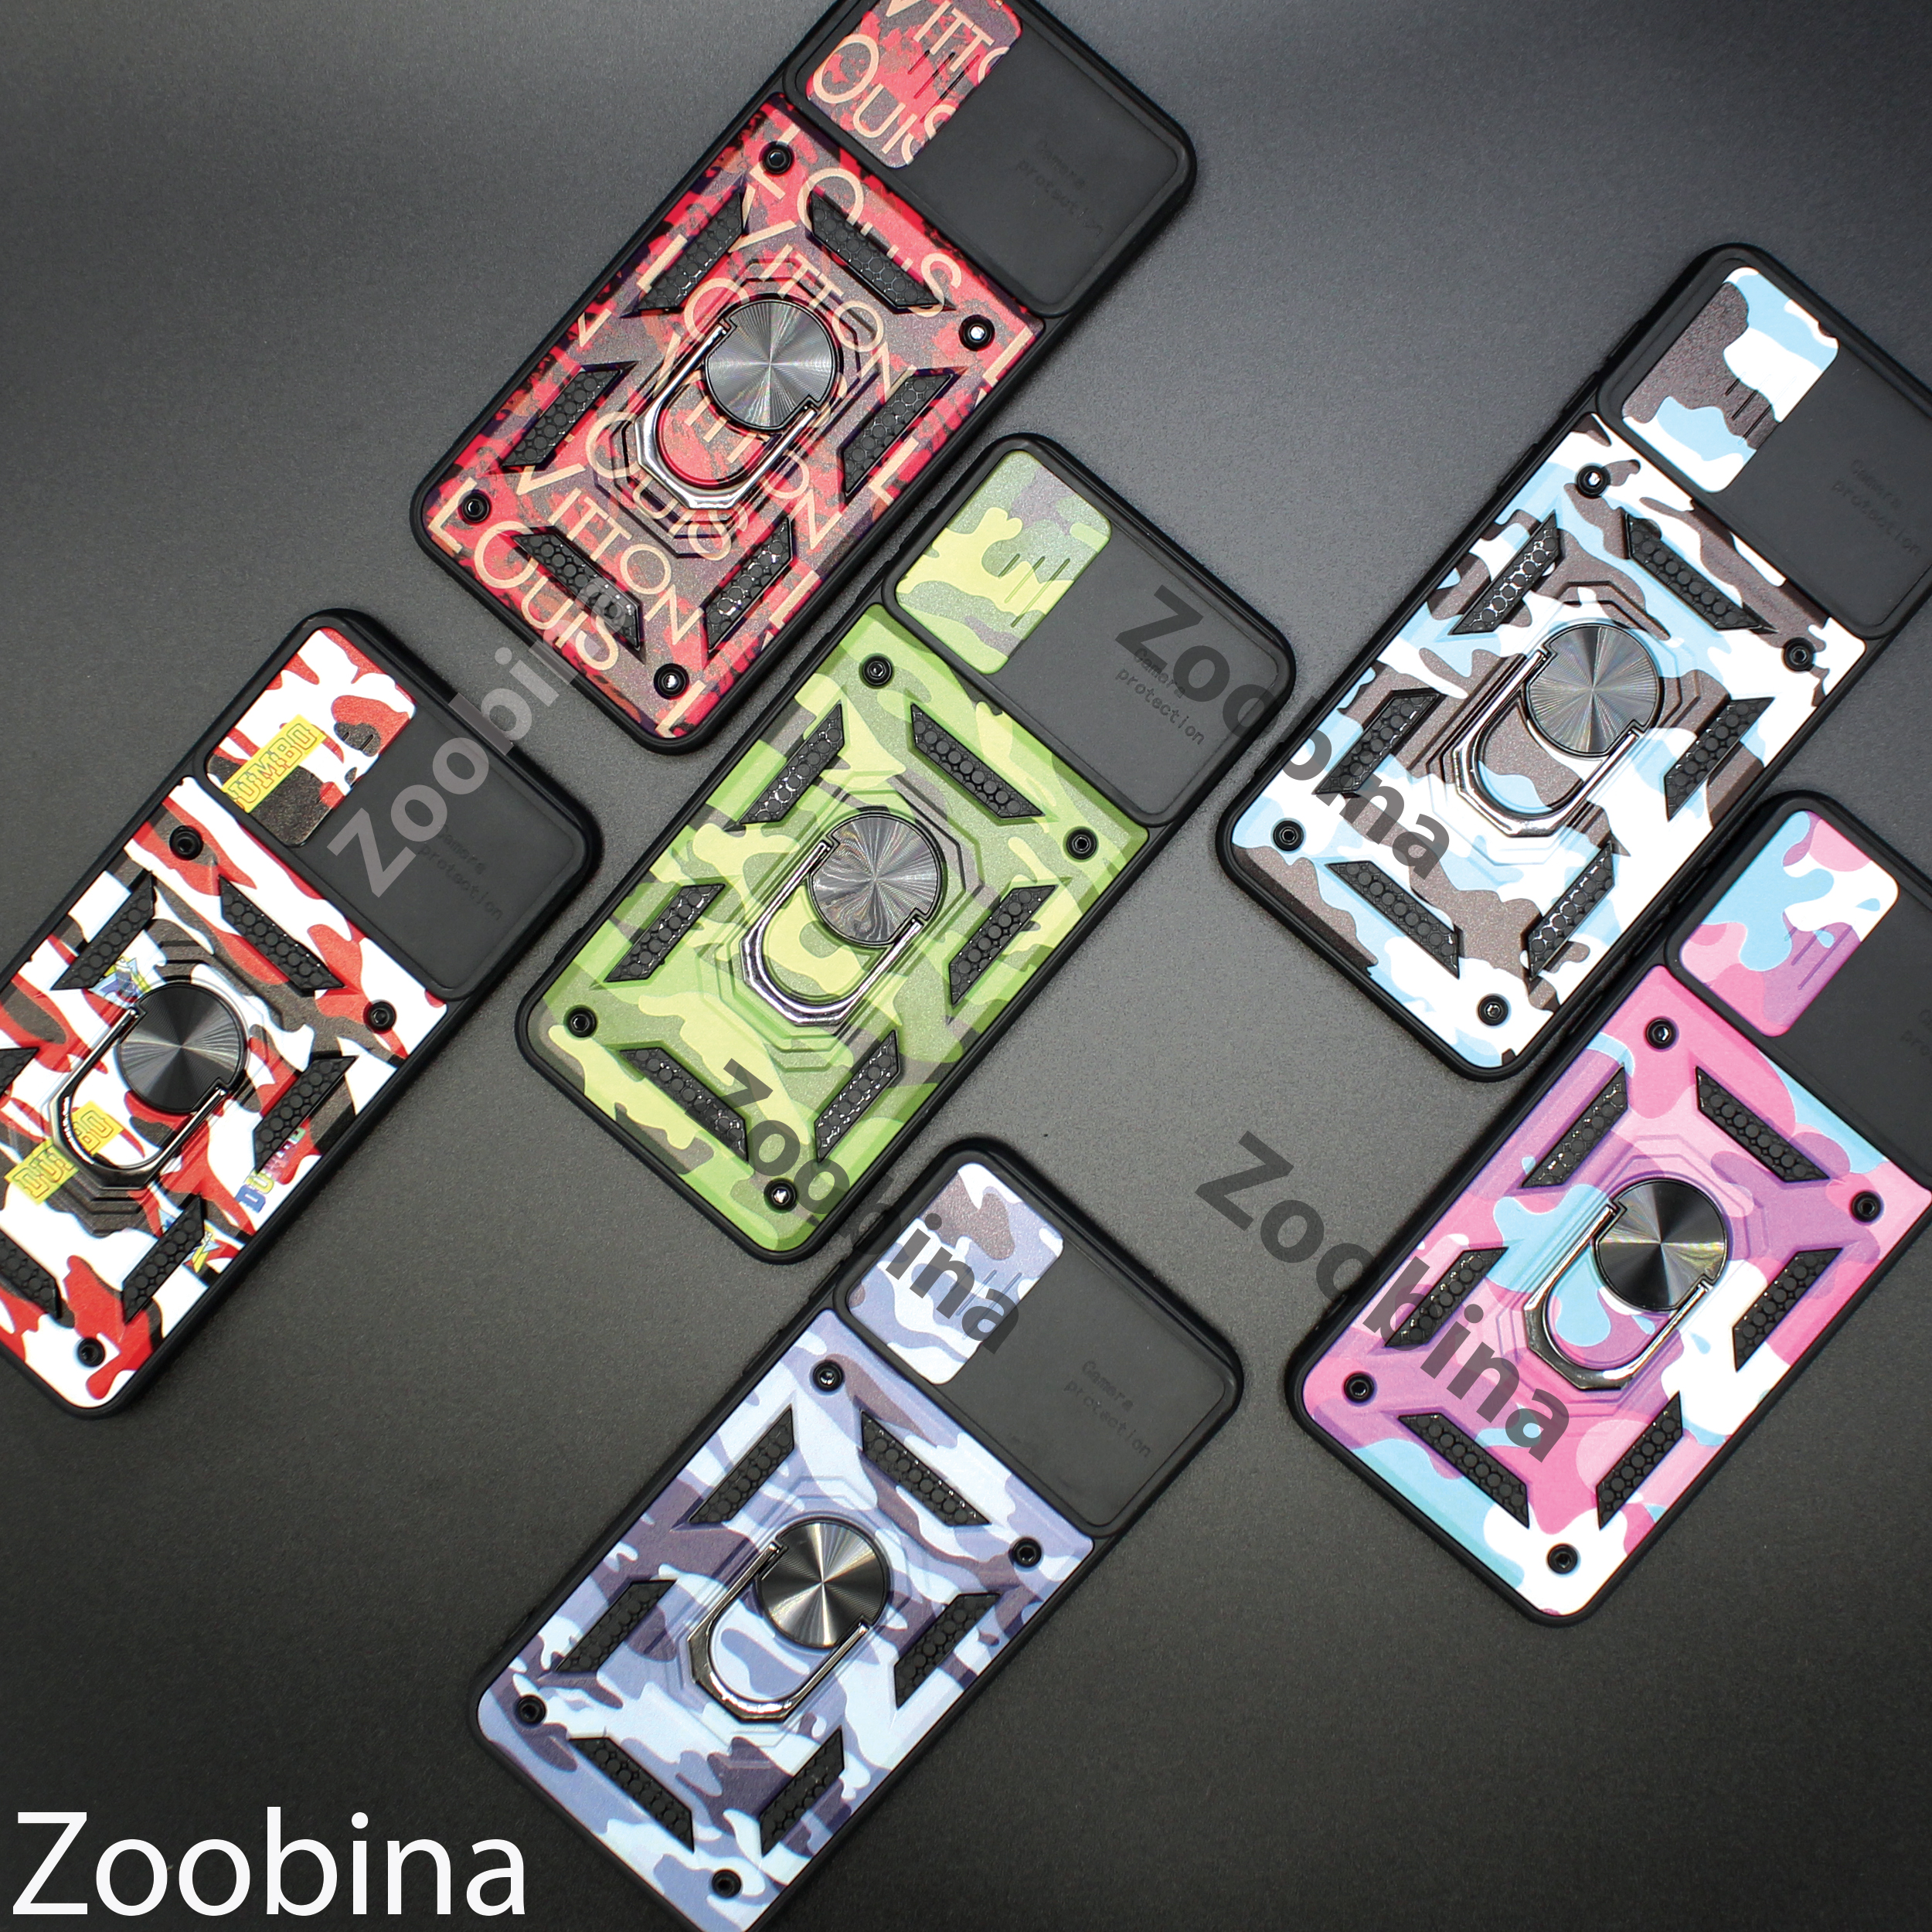 مشخصات، قیمت و خرید کاور زوبینا مدل Z BAT مناسب برای گوشی موبایل 